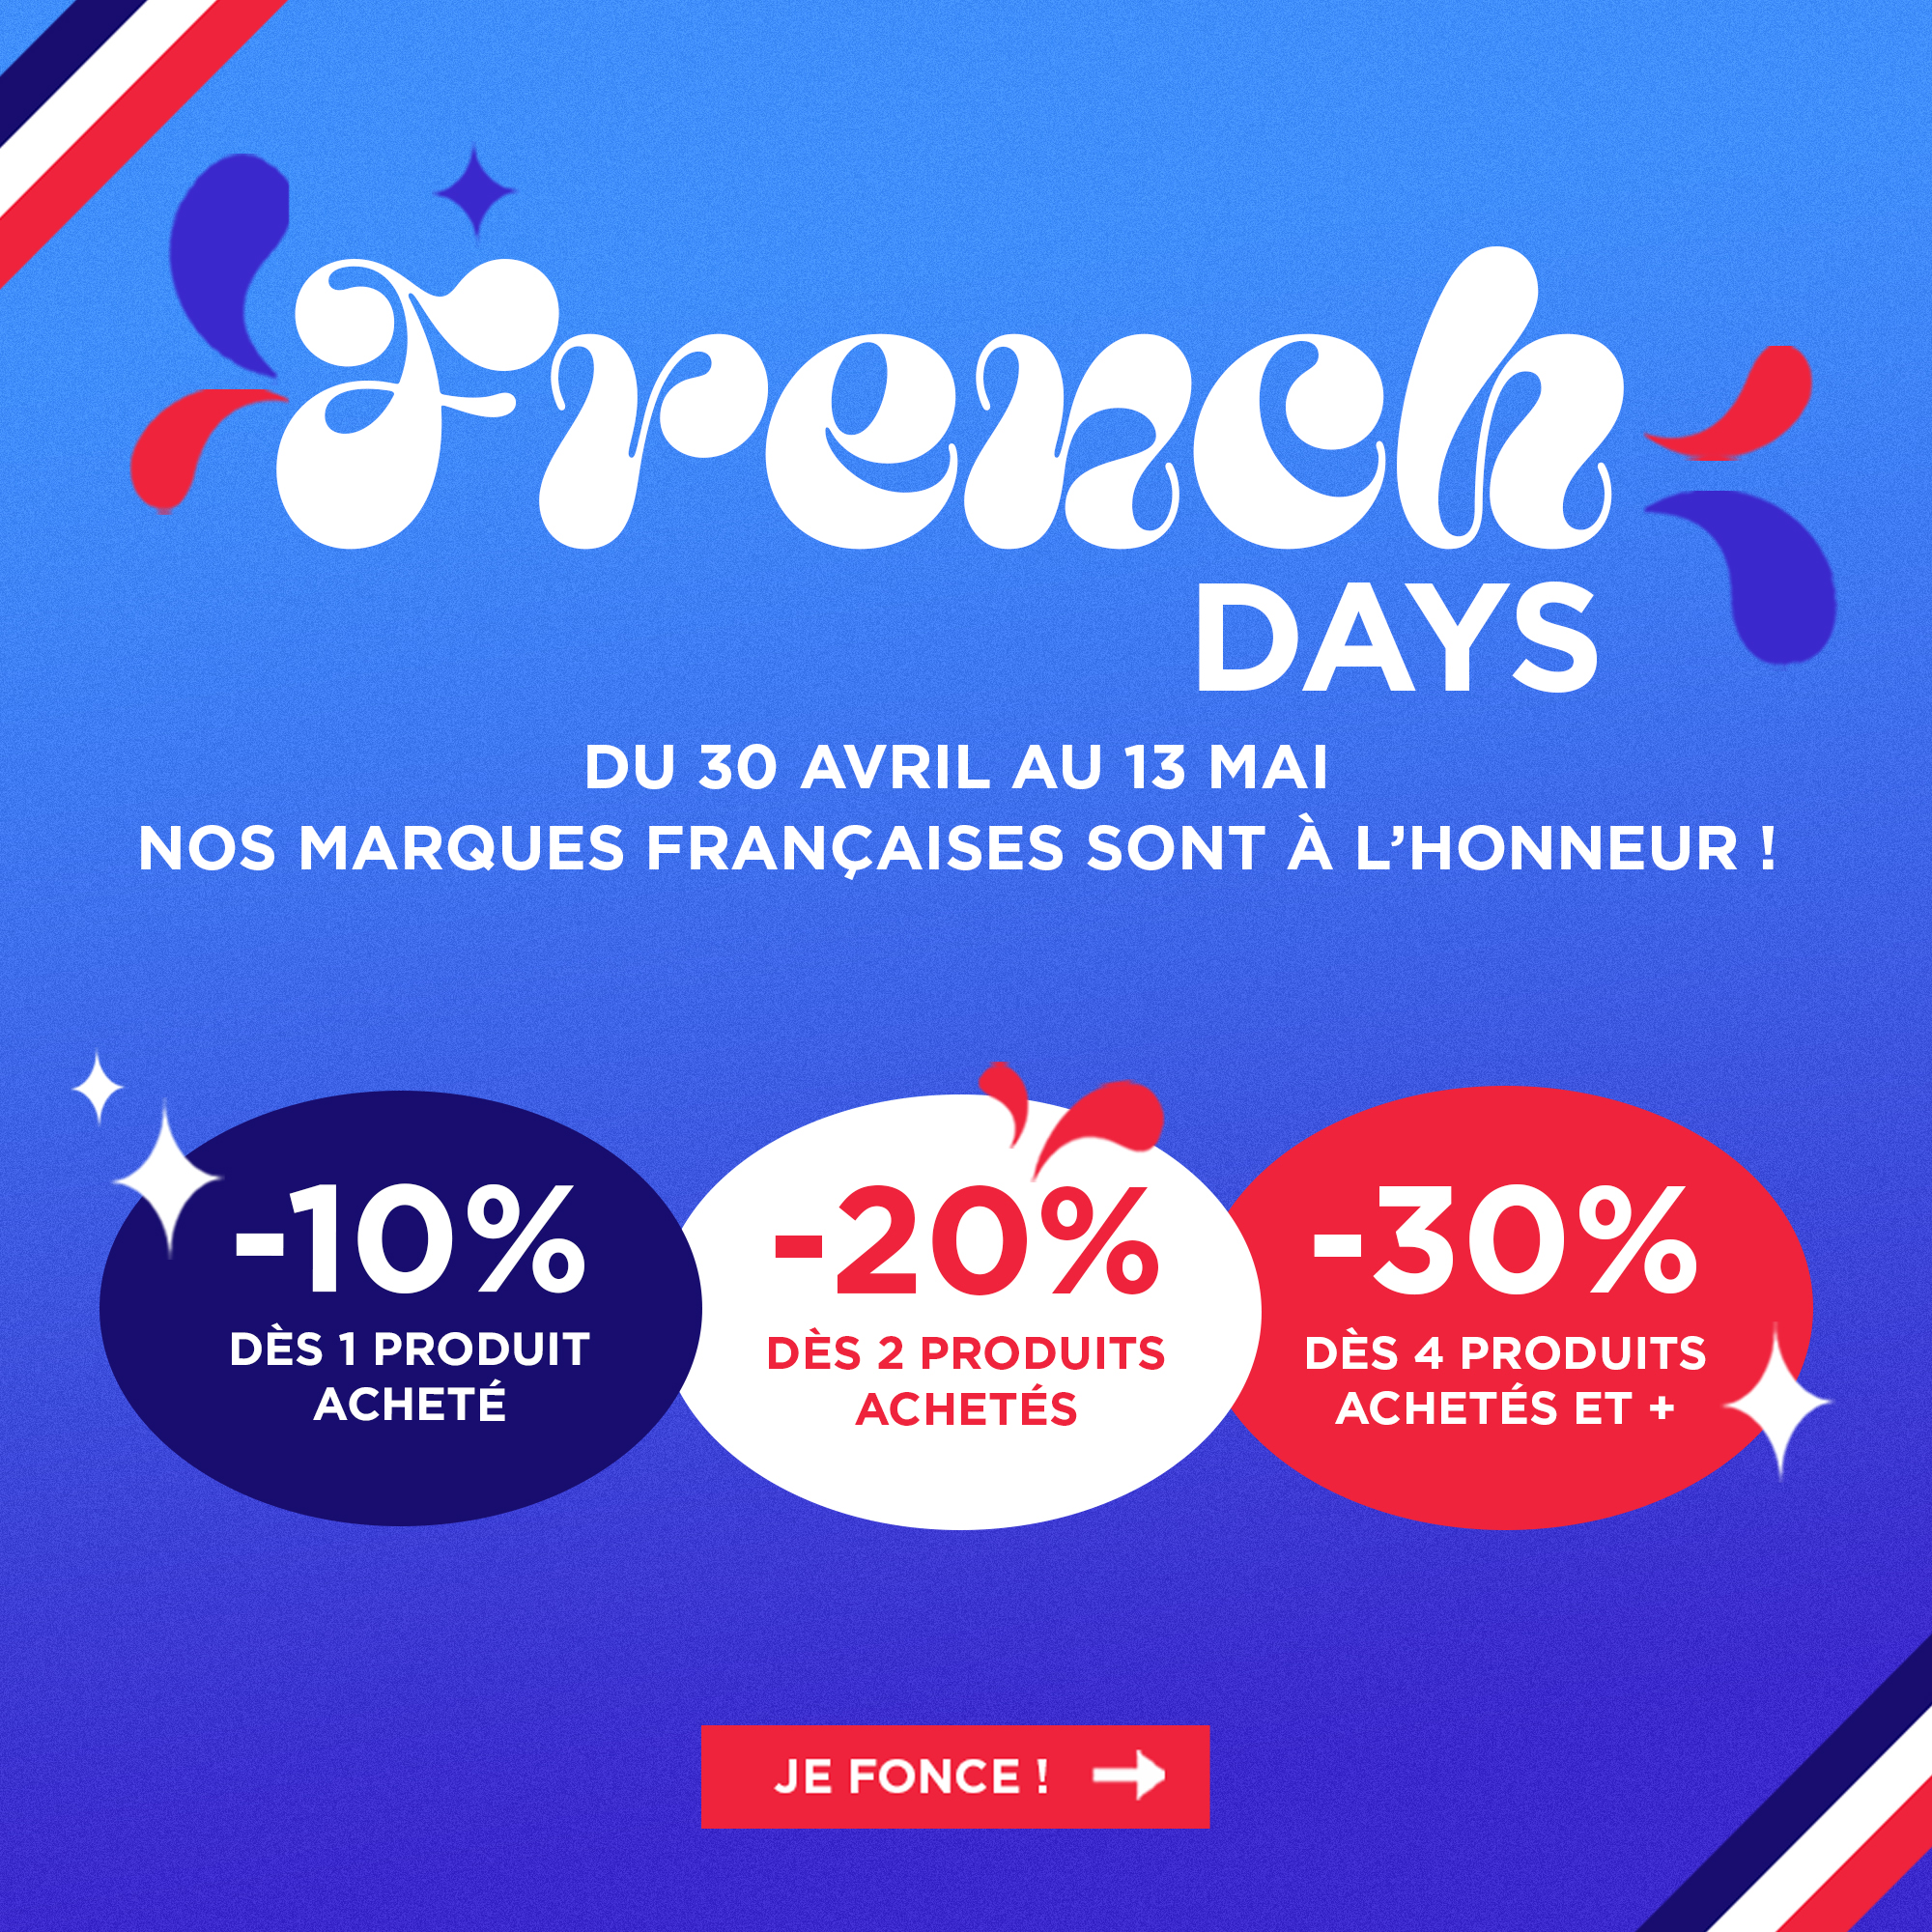 Prolongation des French Days jusqu'au 13 mai profitez de nos bons plans jusqu'à 30% de remise sur toutes nos marques françaises